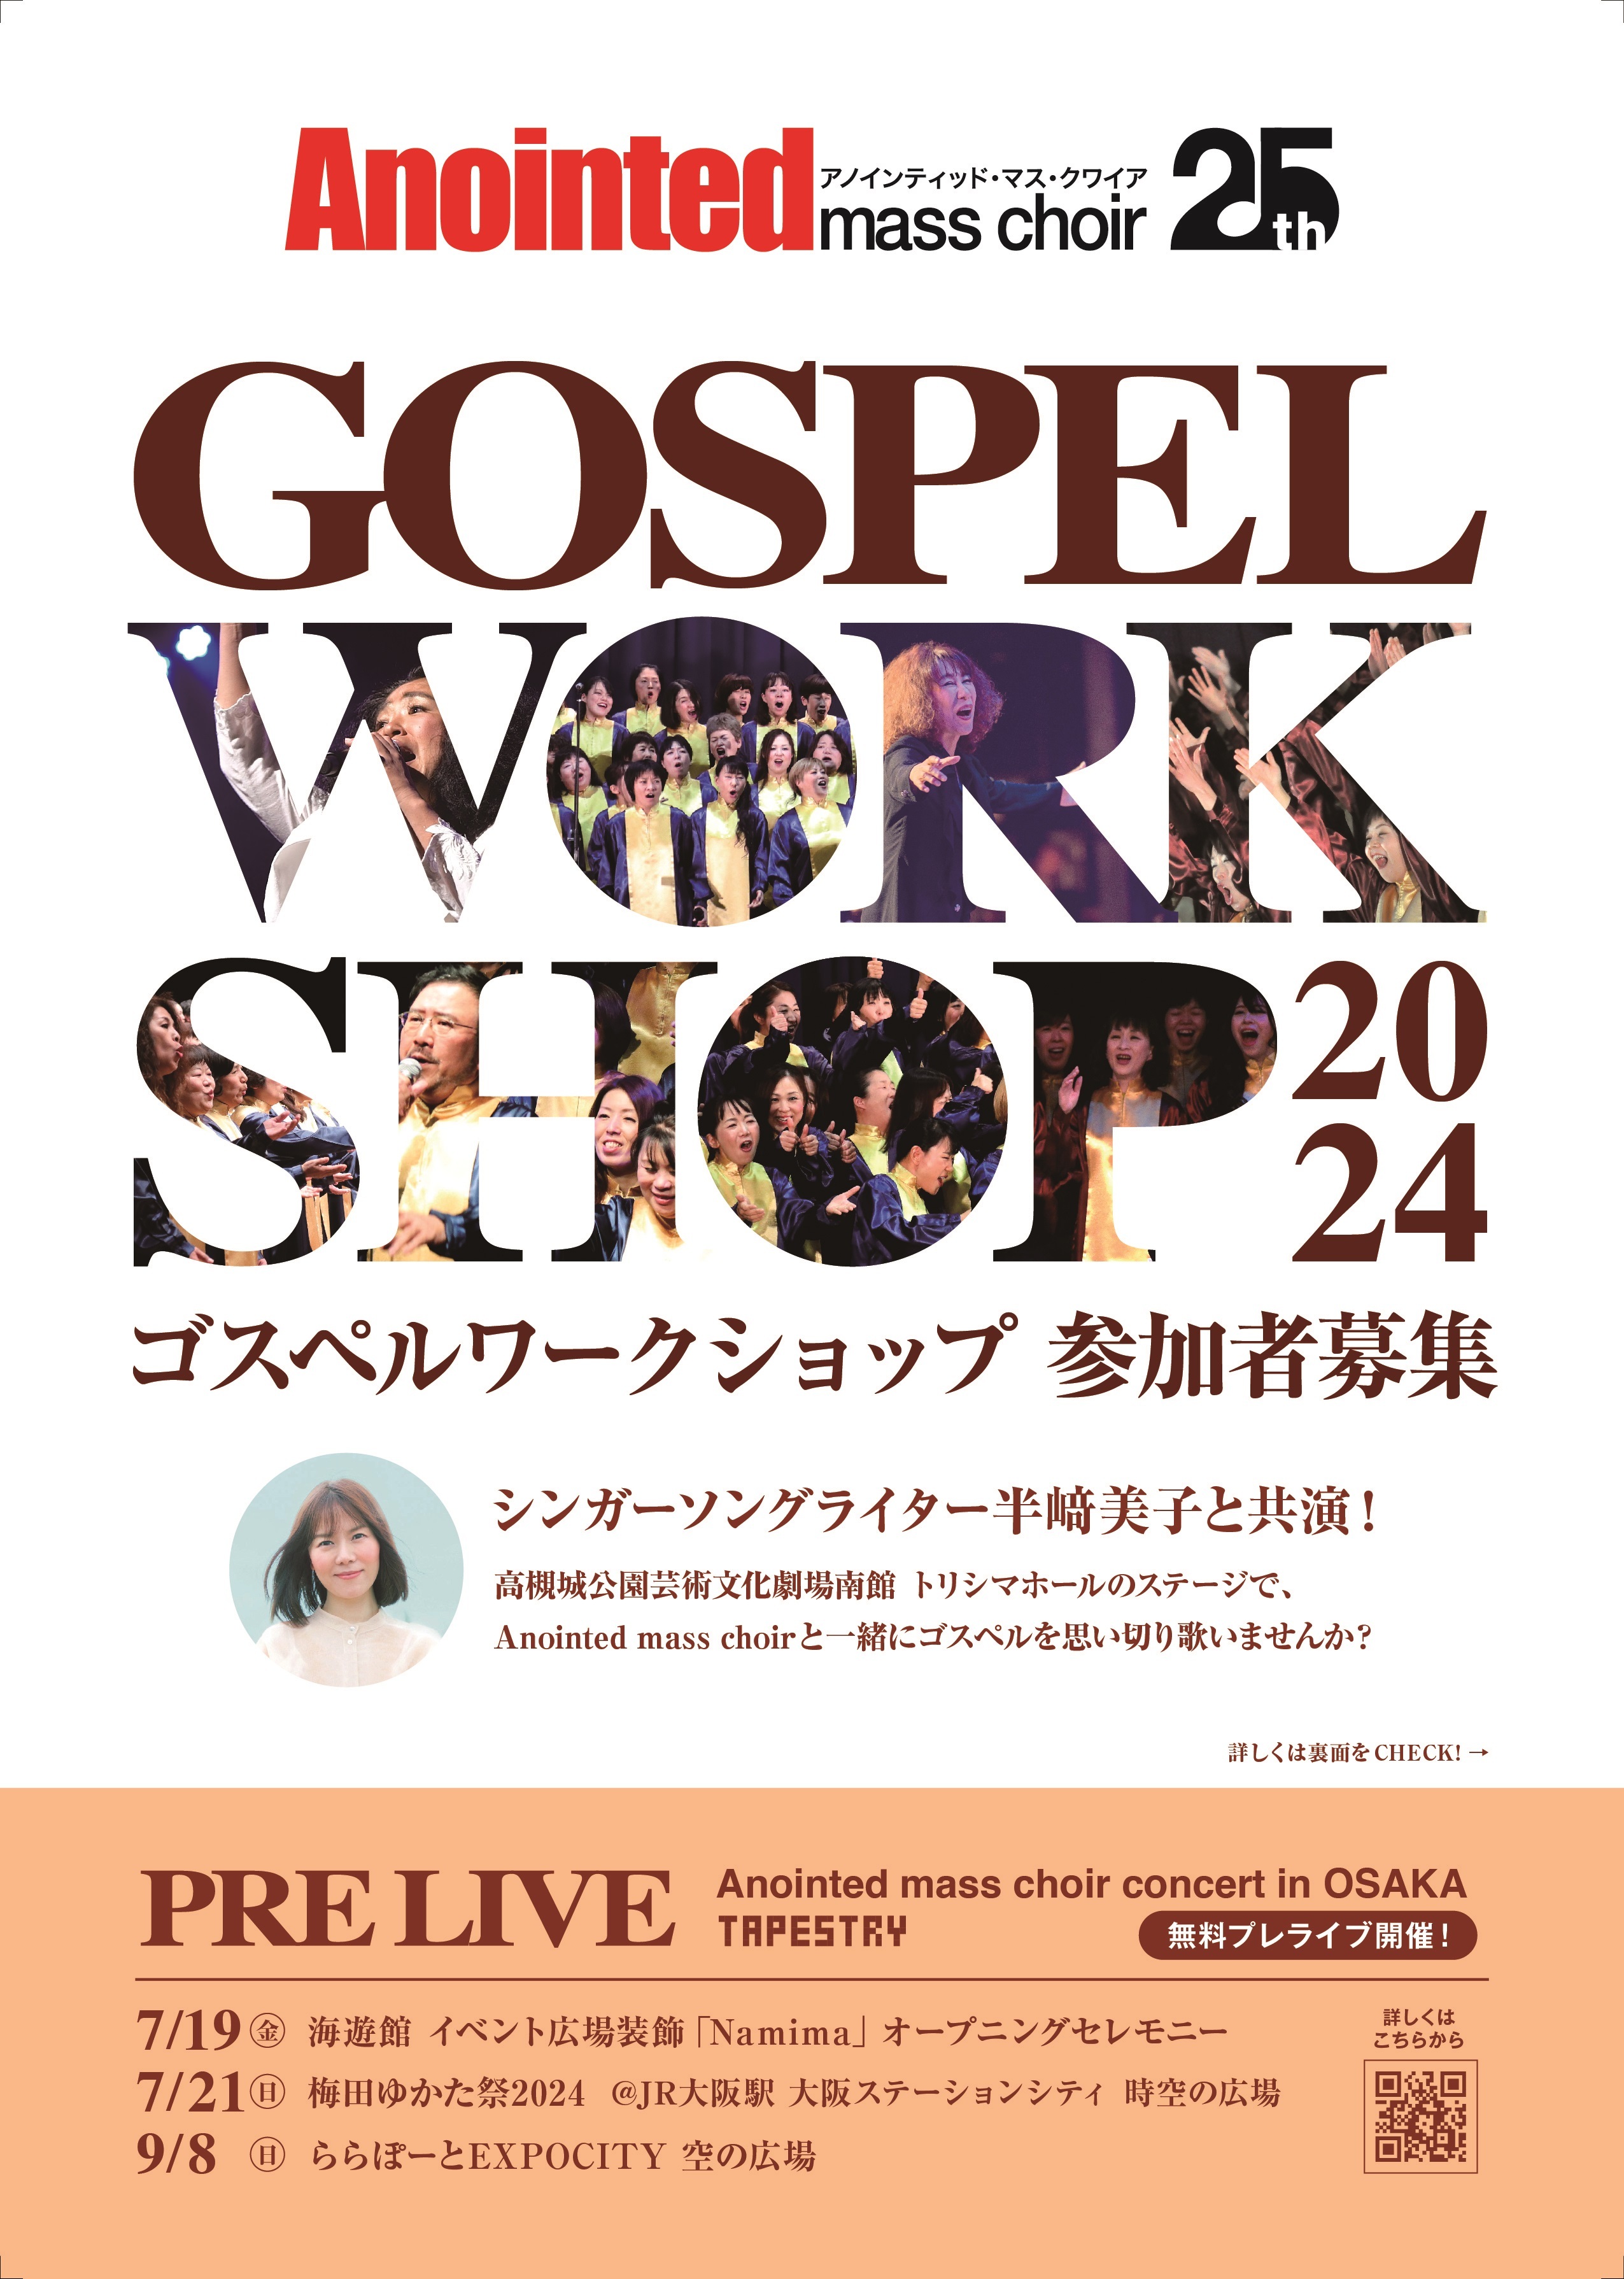 ゴスペルグループ「Anointed mass choir」が、大阪にて10/5に
コンサートを開催　また、このステージに出演するための
ゴスペルワークショップの参加者を募集！